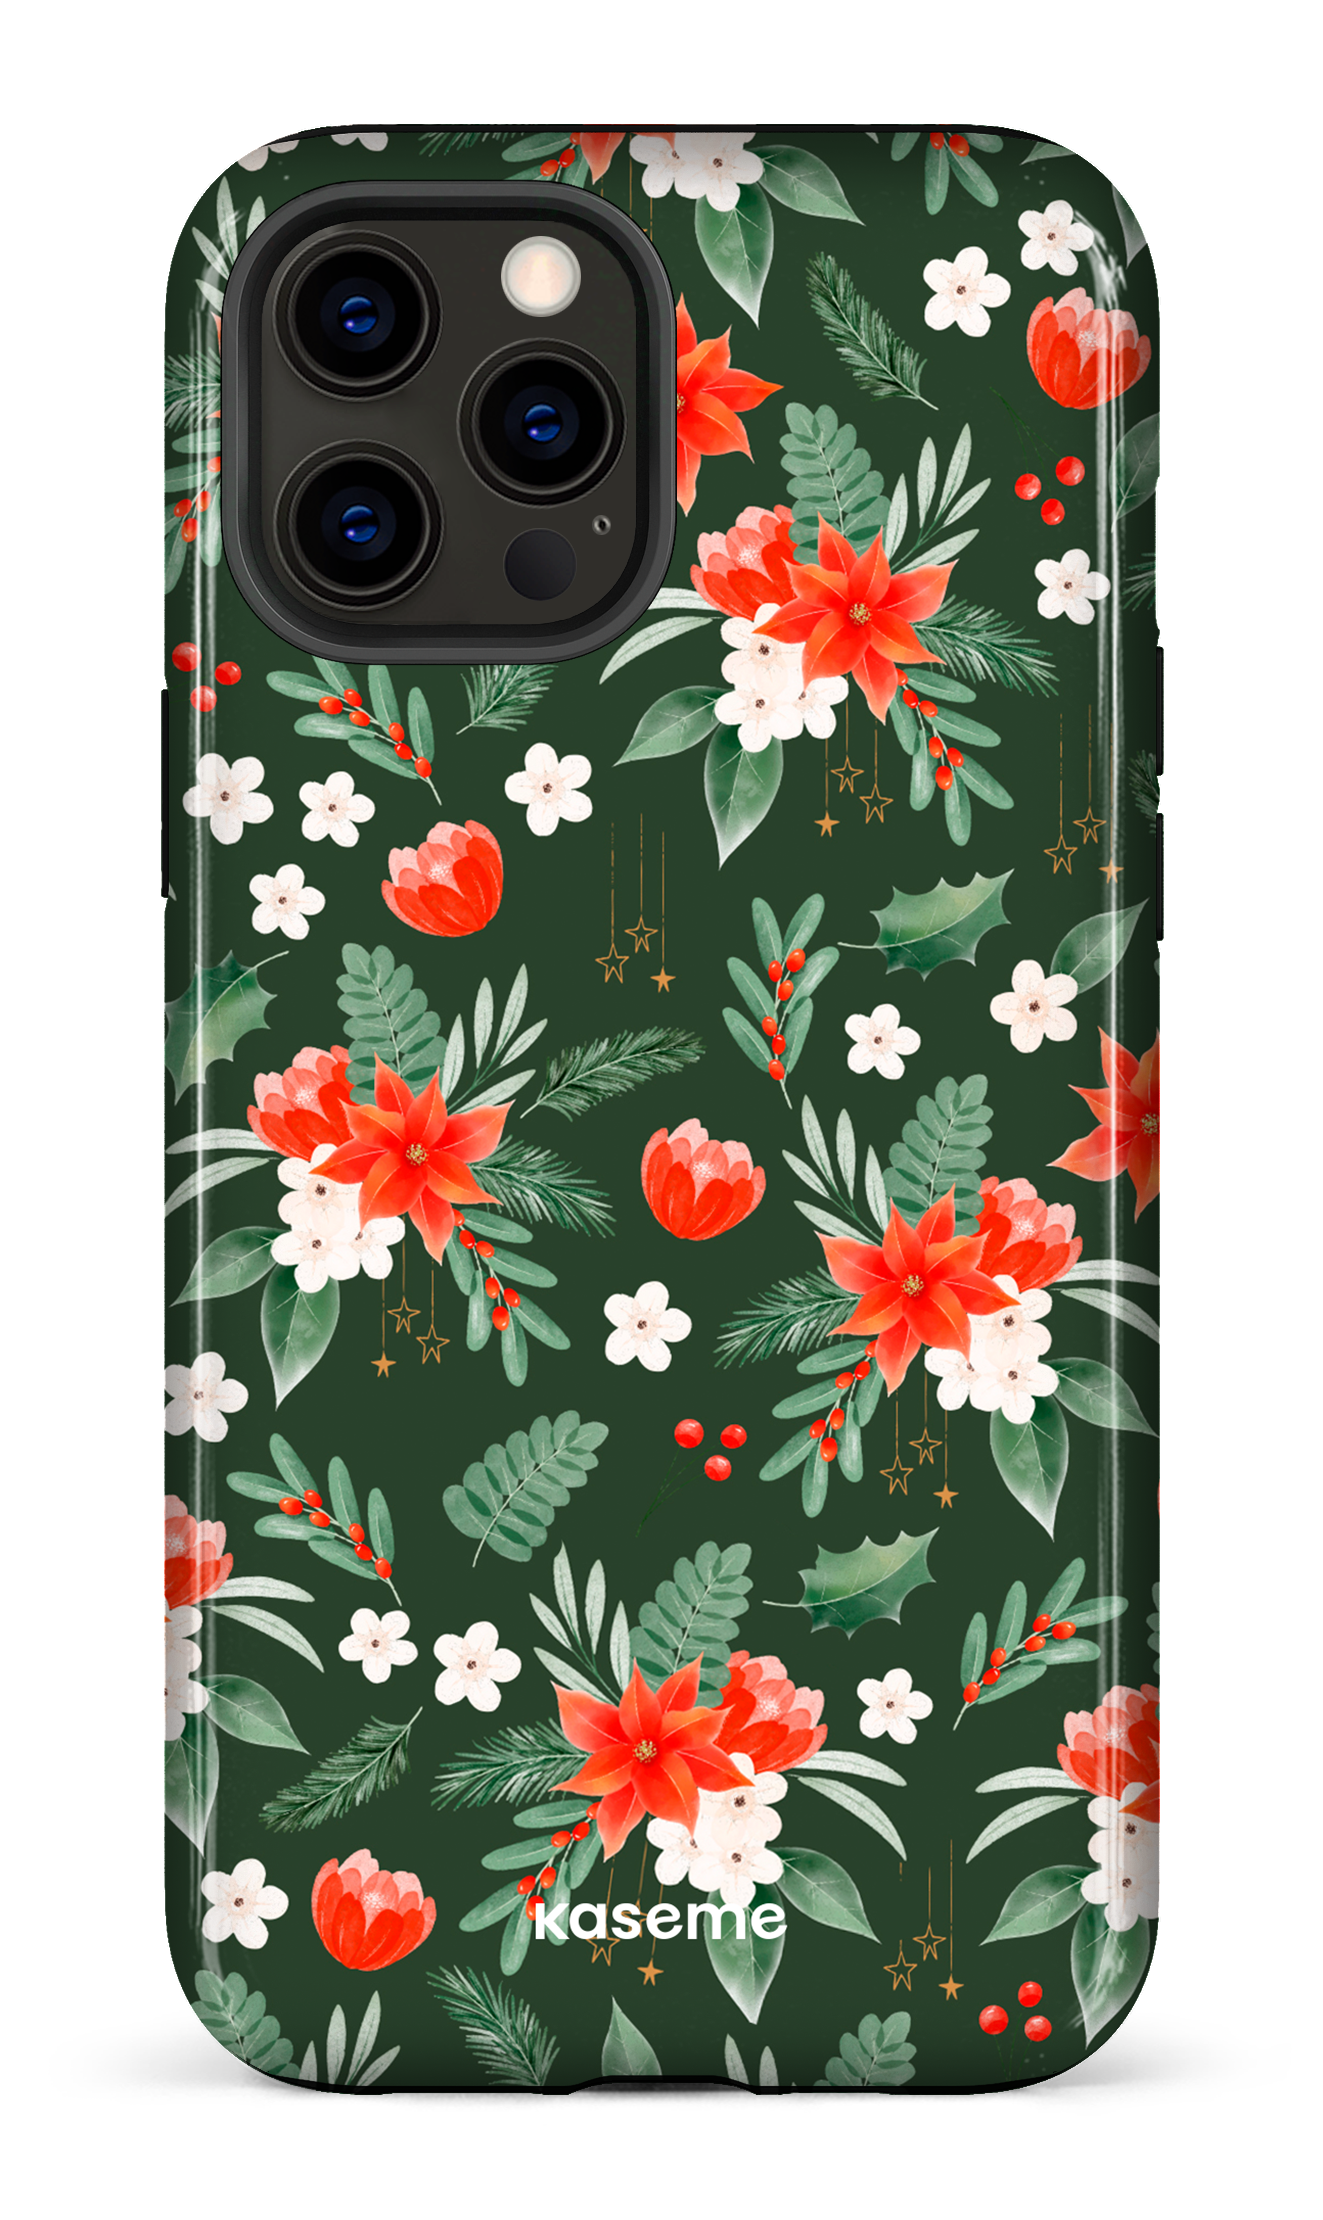 Poinsettia - iPhone 12 Pro Max